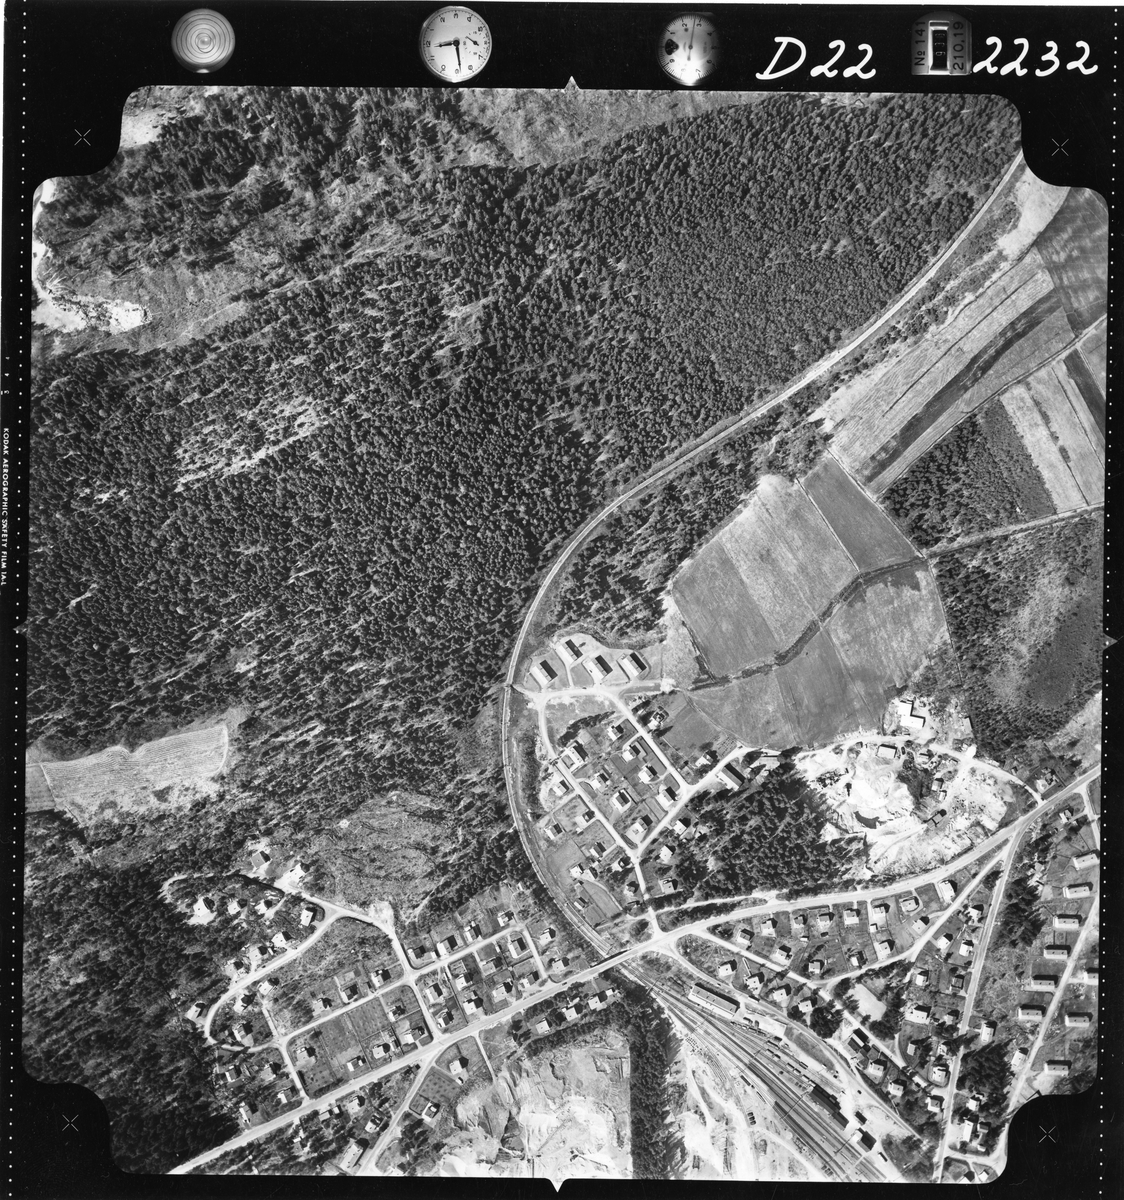 Flyfotoarkiv fra Fjellanger Widerøe AS, fra Porsgrunn Kommune, Eidanger station. Fotografert 16/05-1962. Oppdrag nr 2232, D22